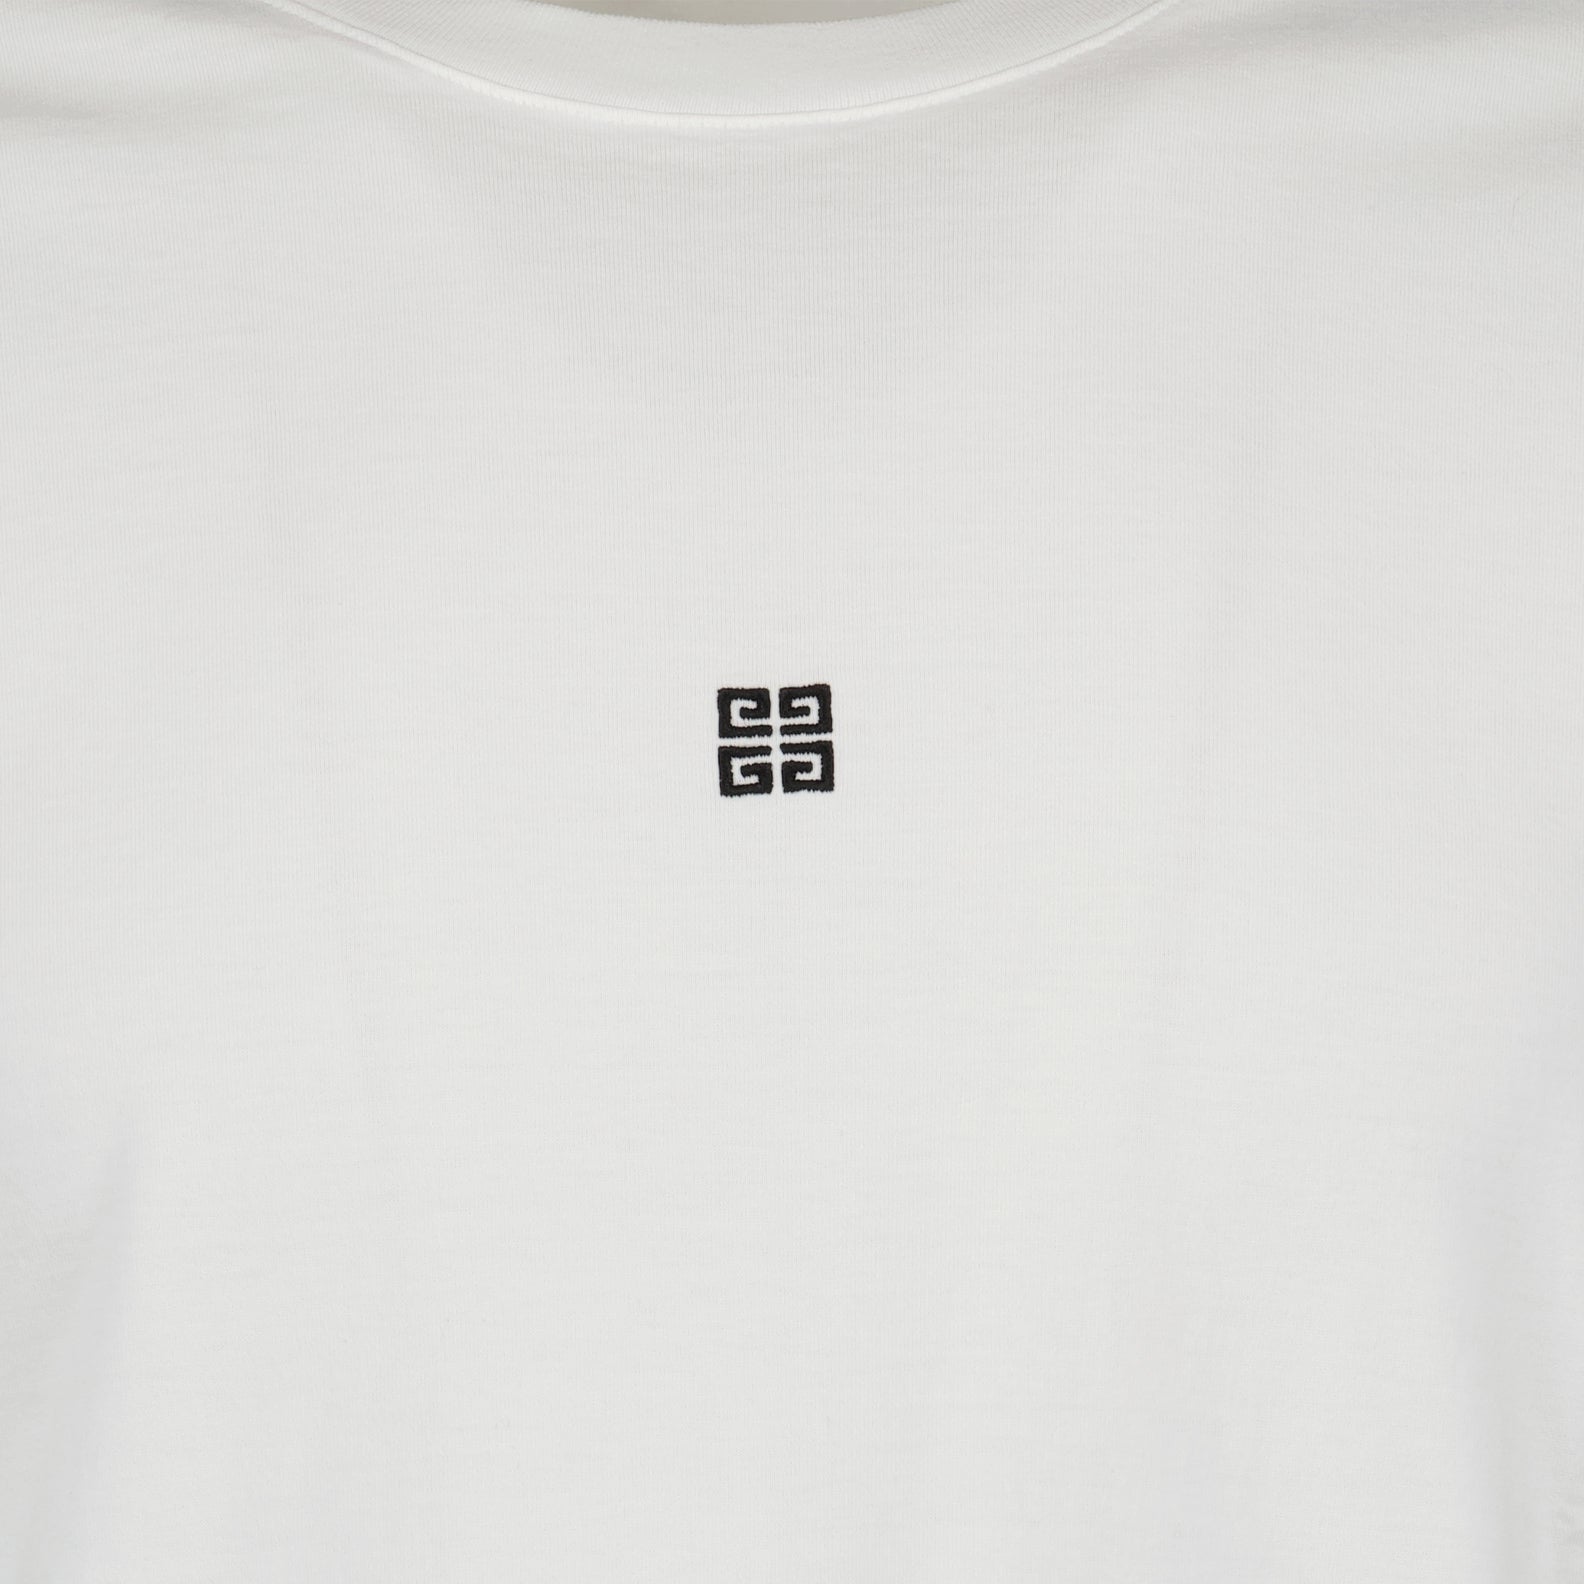 White 4G t-shirt